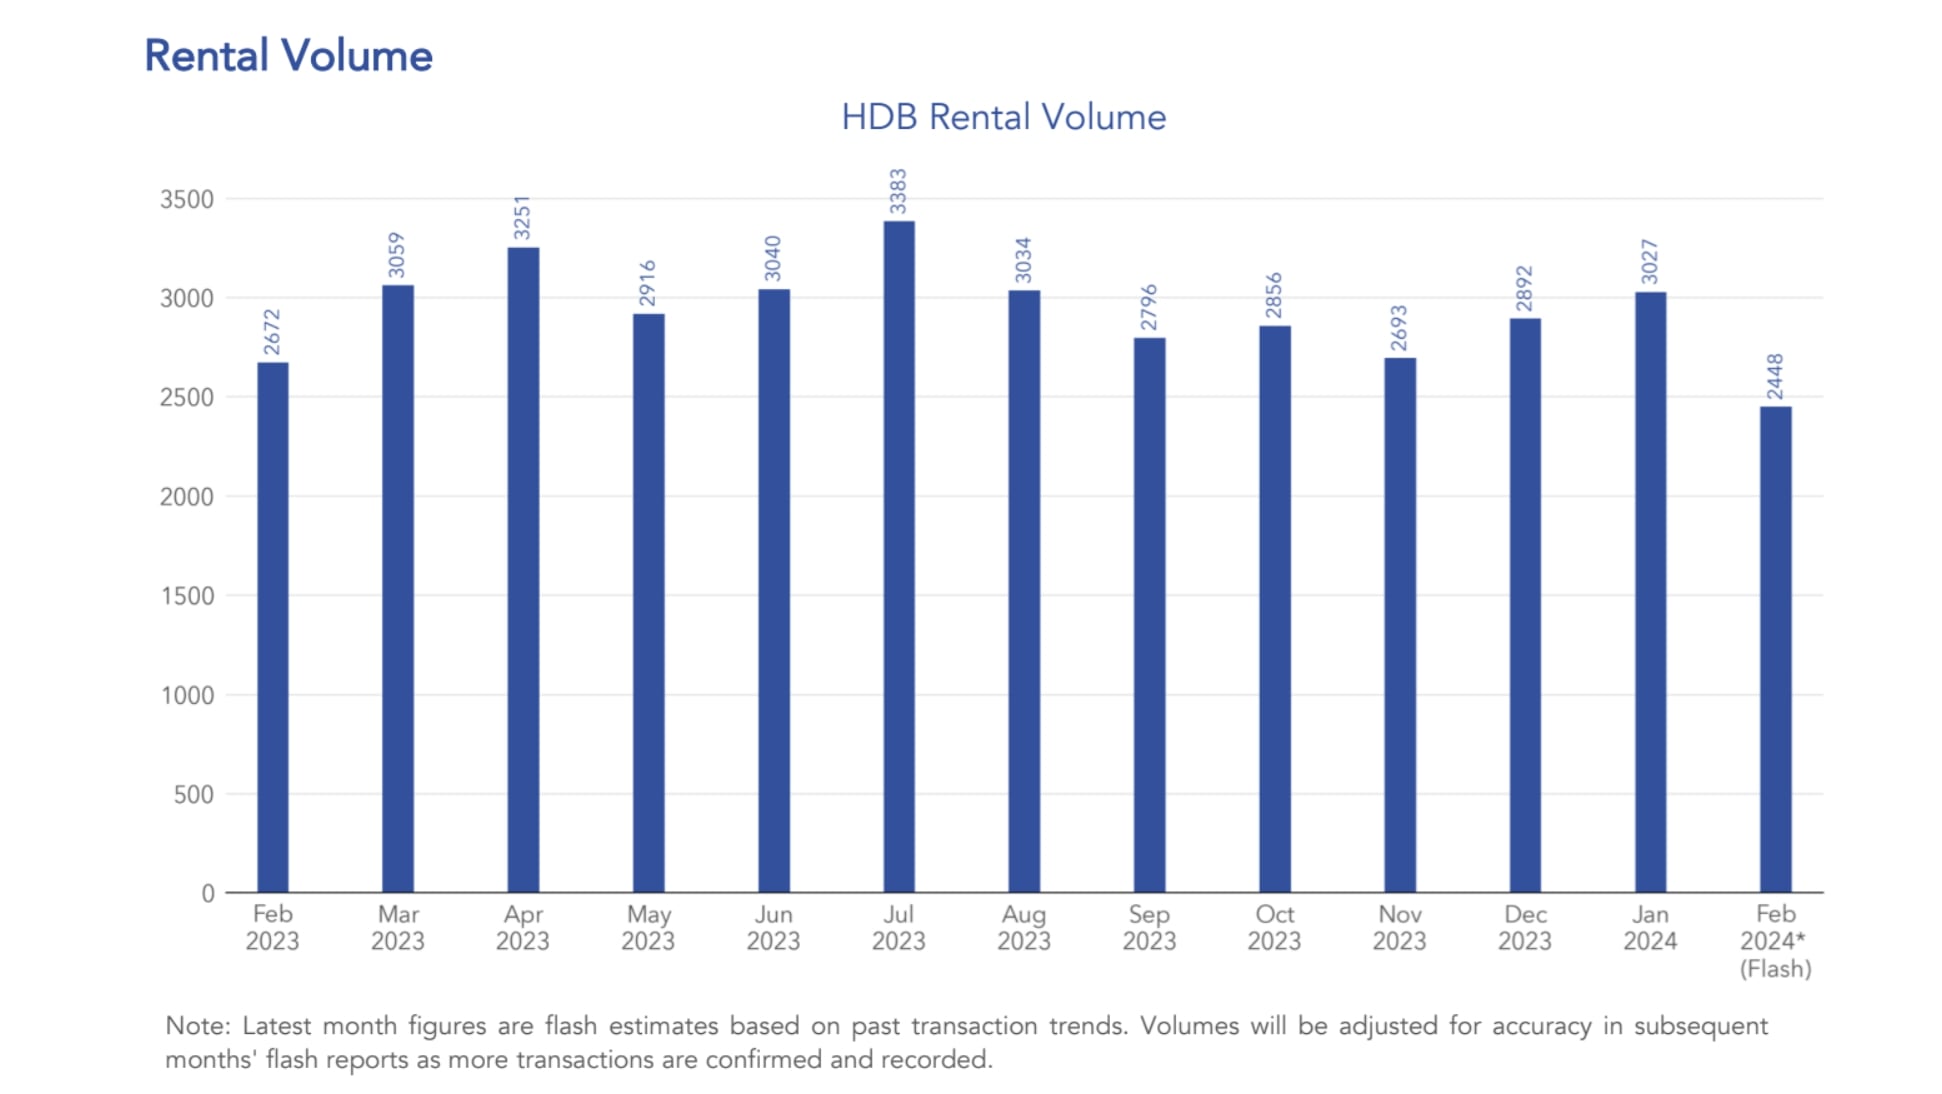 HDB Rental Volume Feb 2024